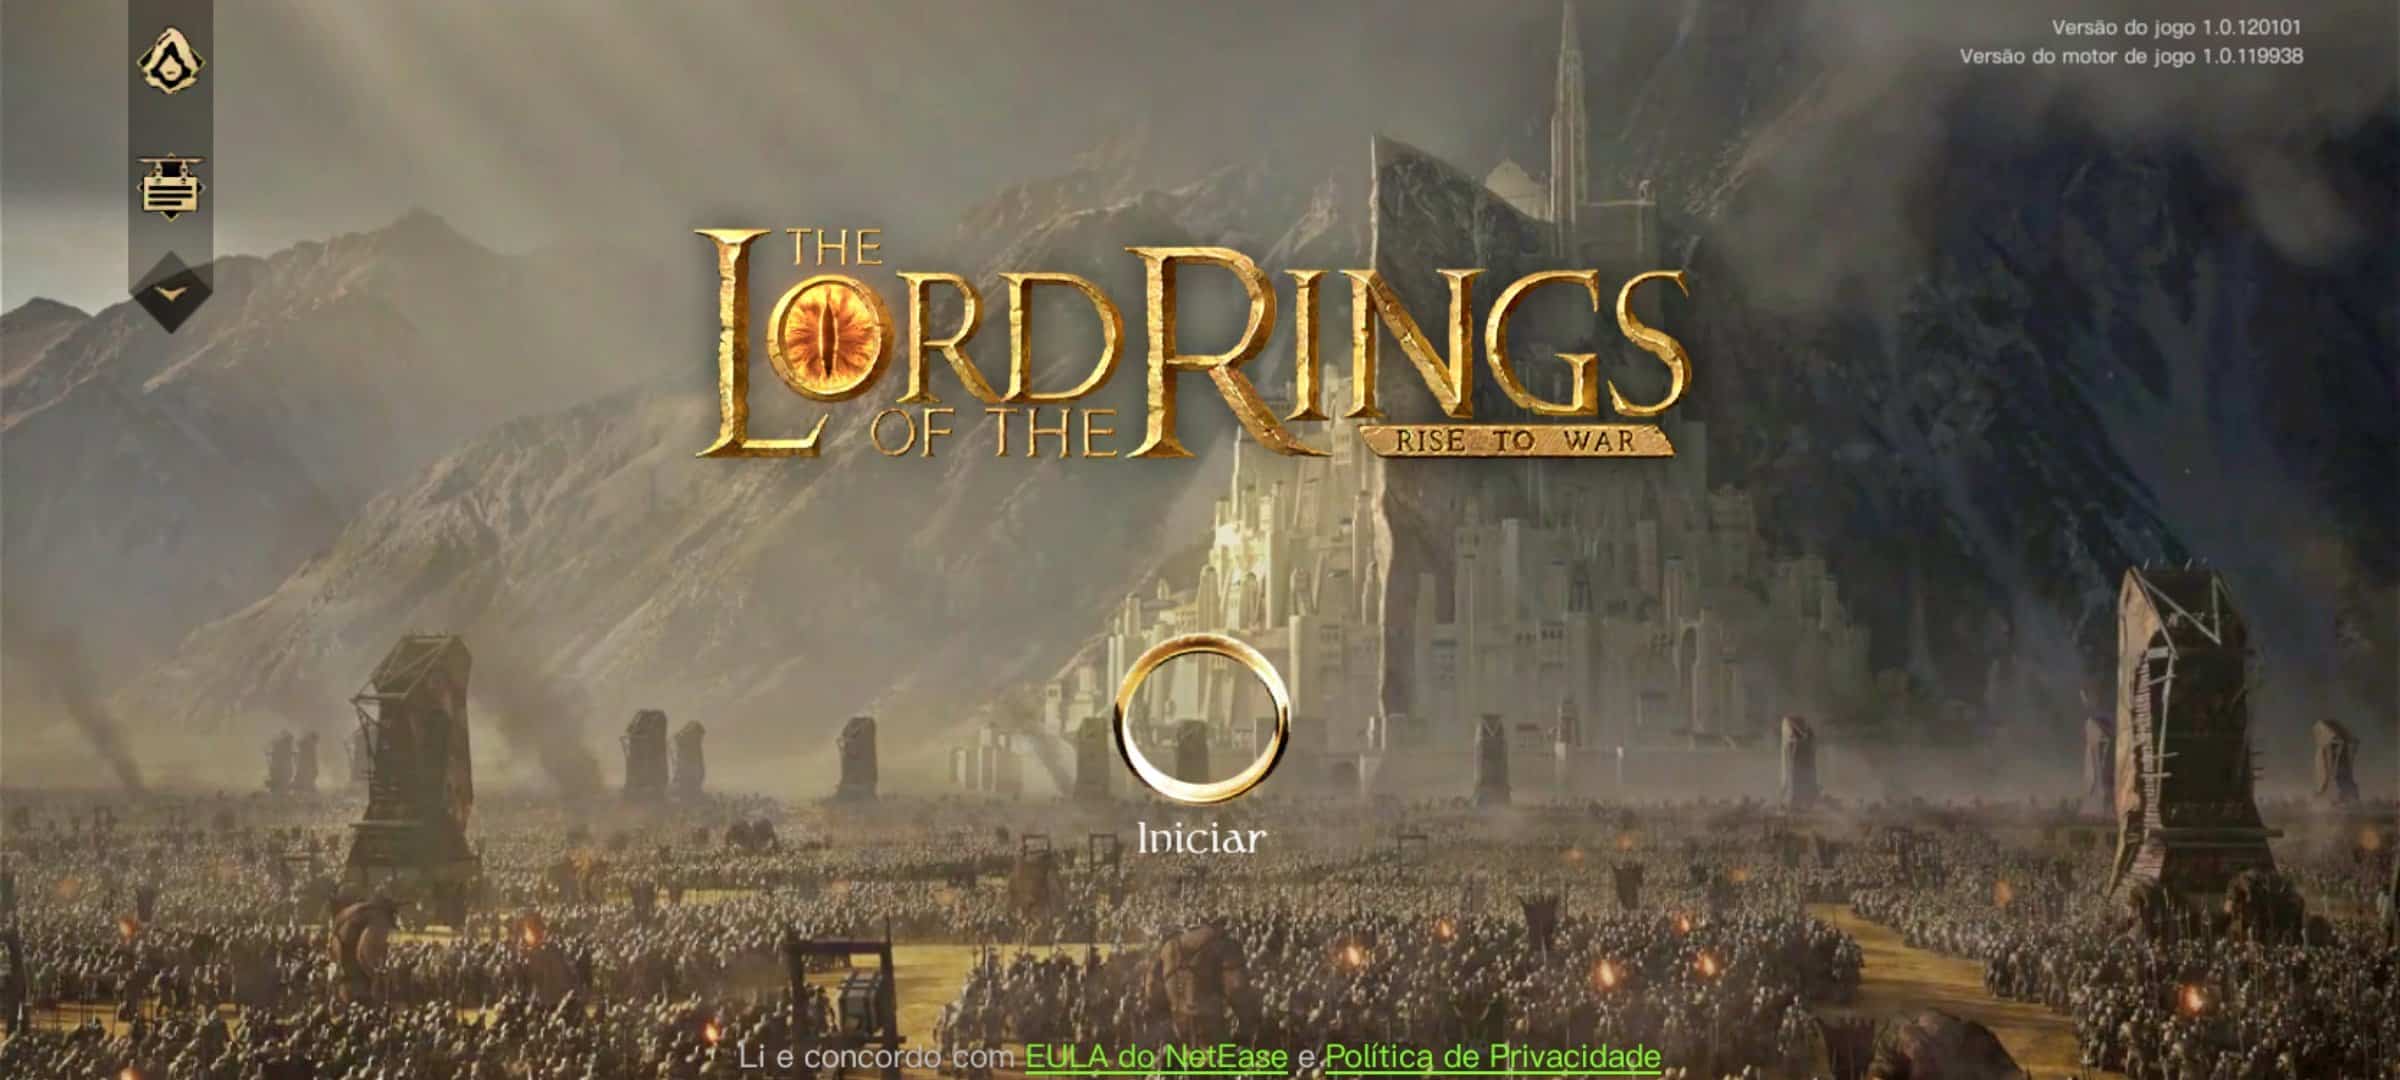 the-lords-of-the-rings-rise-to-war-android-ios The Lord of the Rings: Rise to War é o jogo de estratégia licenciado pela NetEase que está disponível agora no iOS e Android